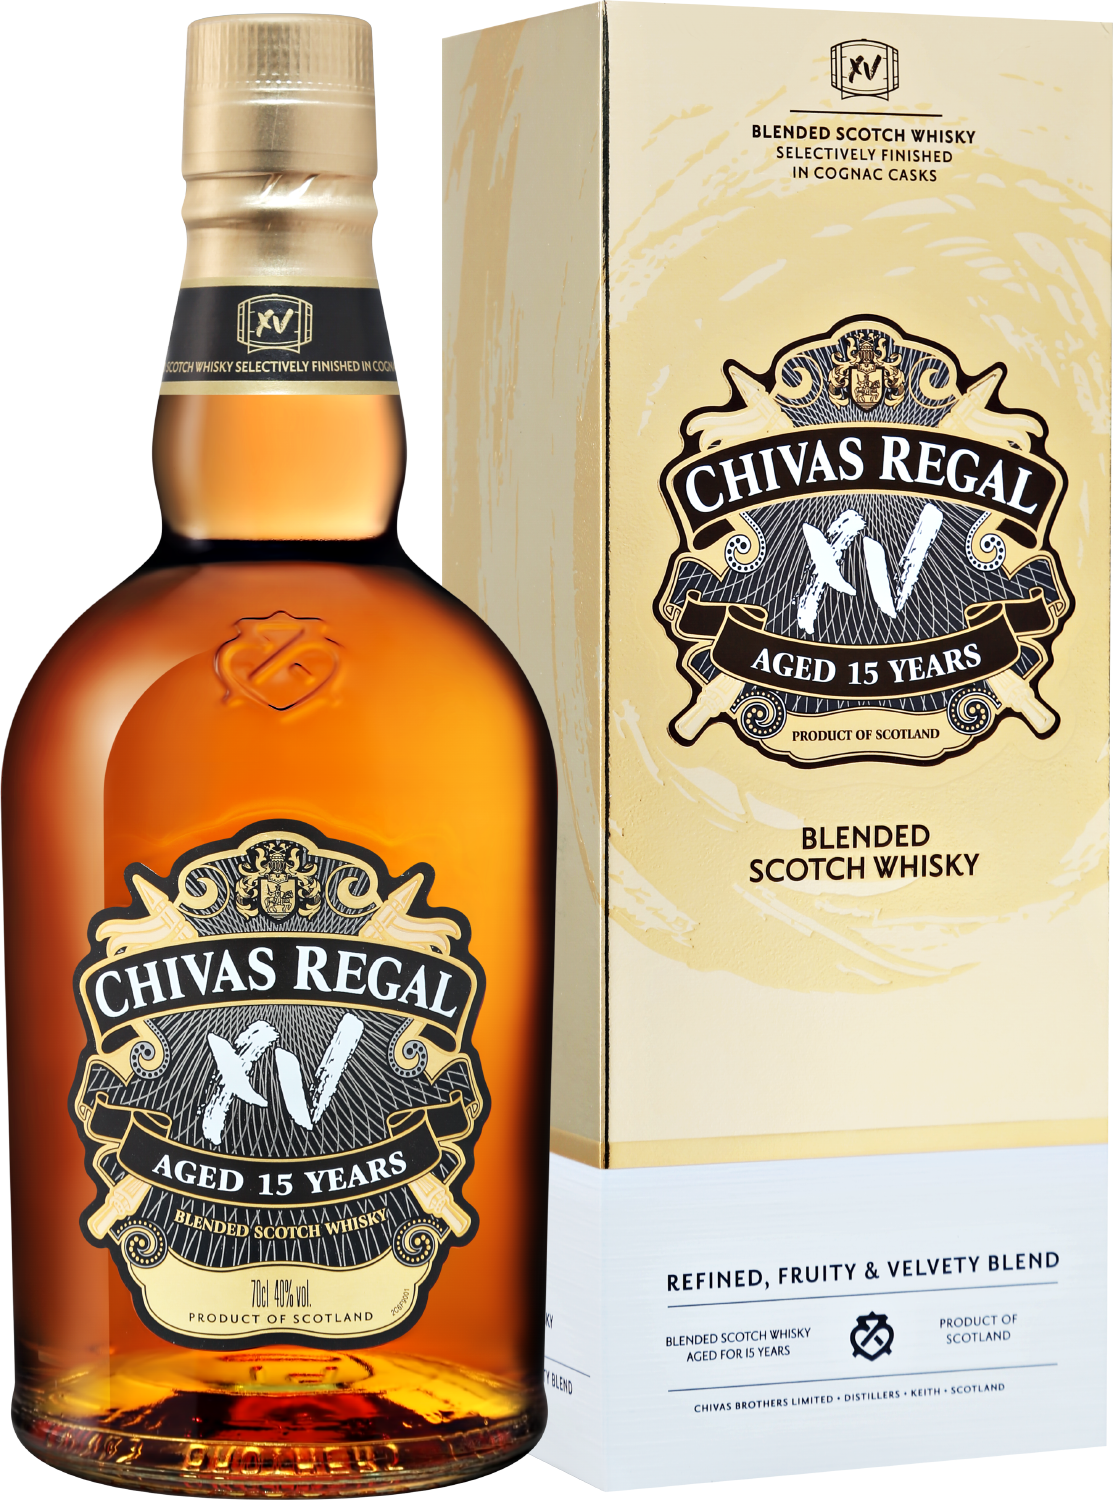 Chivas Regal XV Blended Scotch Whisky 15 y.o. (gift box)